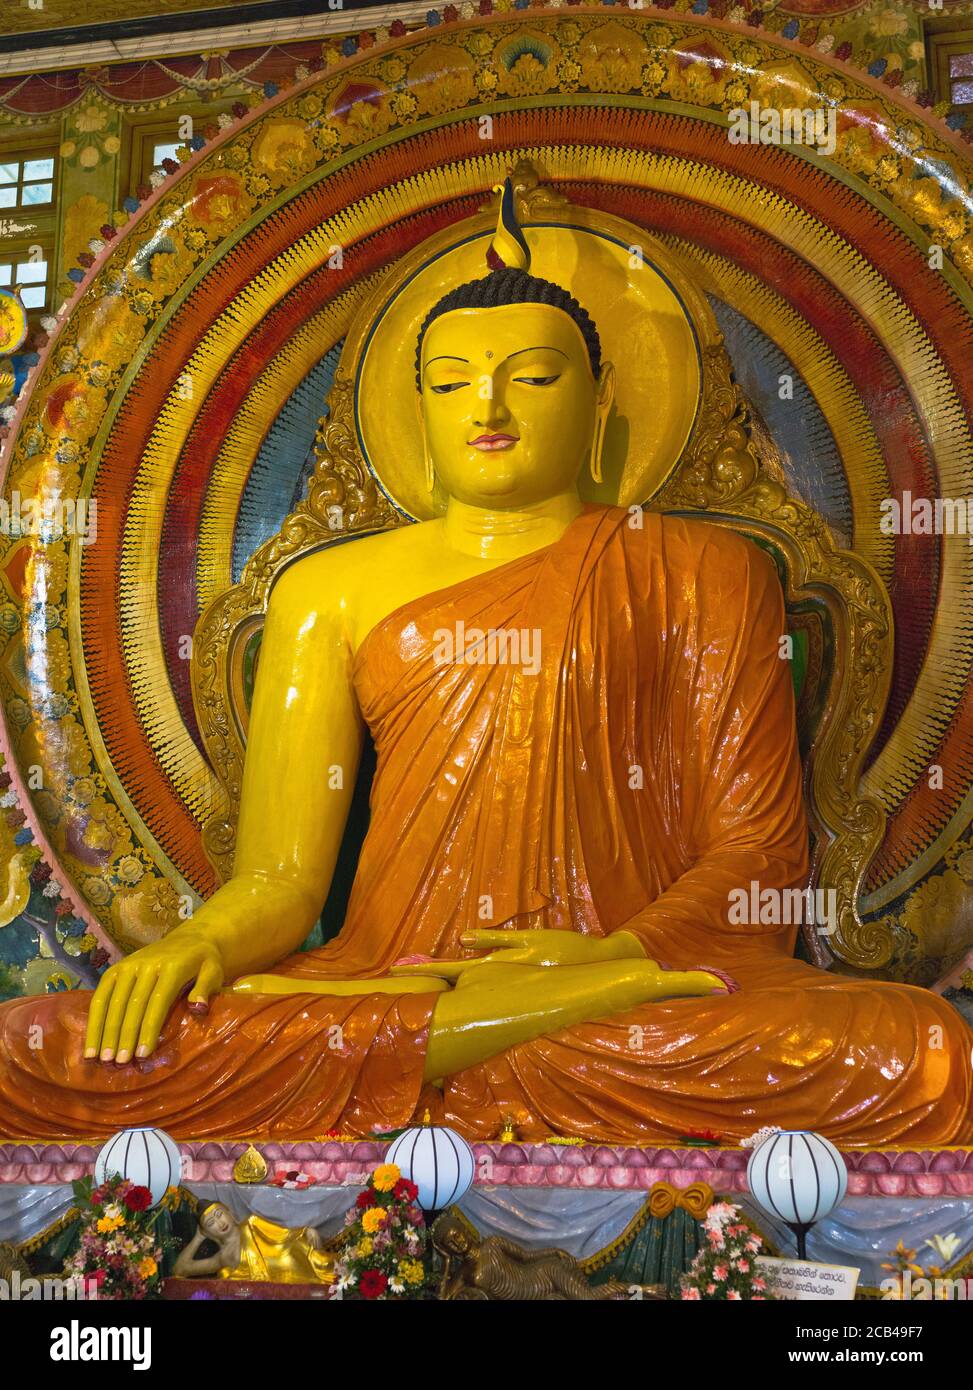 dh Temple bouddhiste Gangaramaya COLOMBO VILLE SRI LANKA temples grands statue de bouddha sanctuaire Banque D'Images